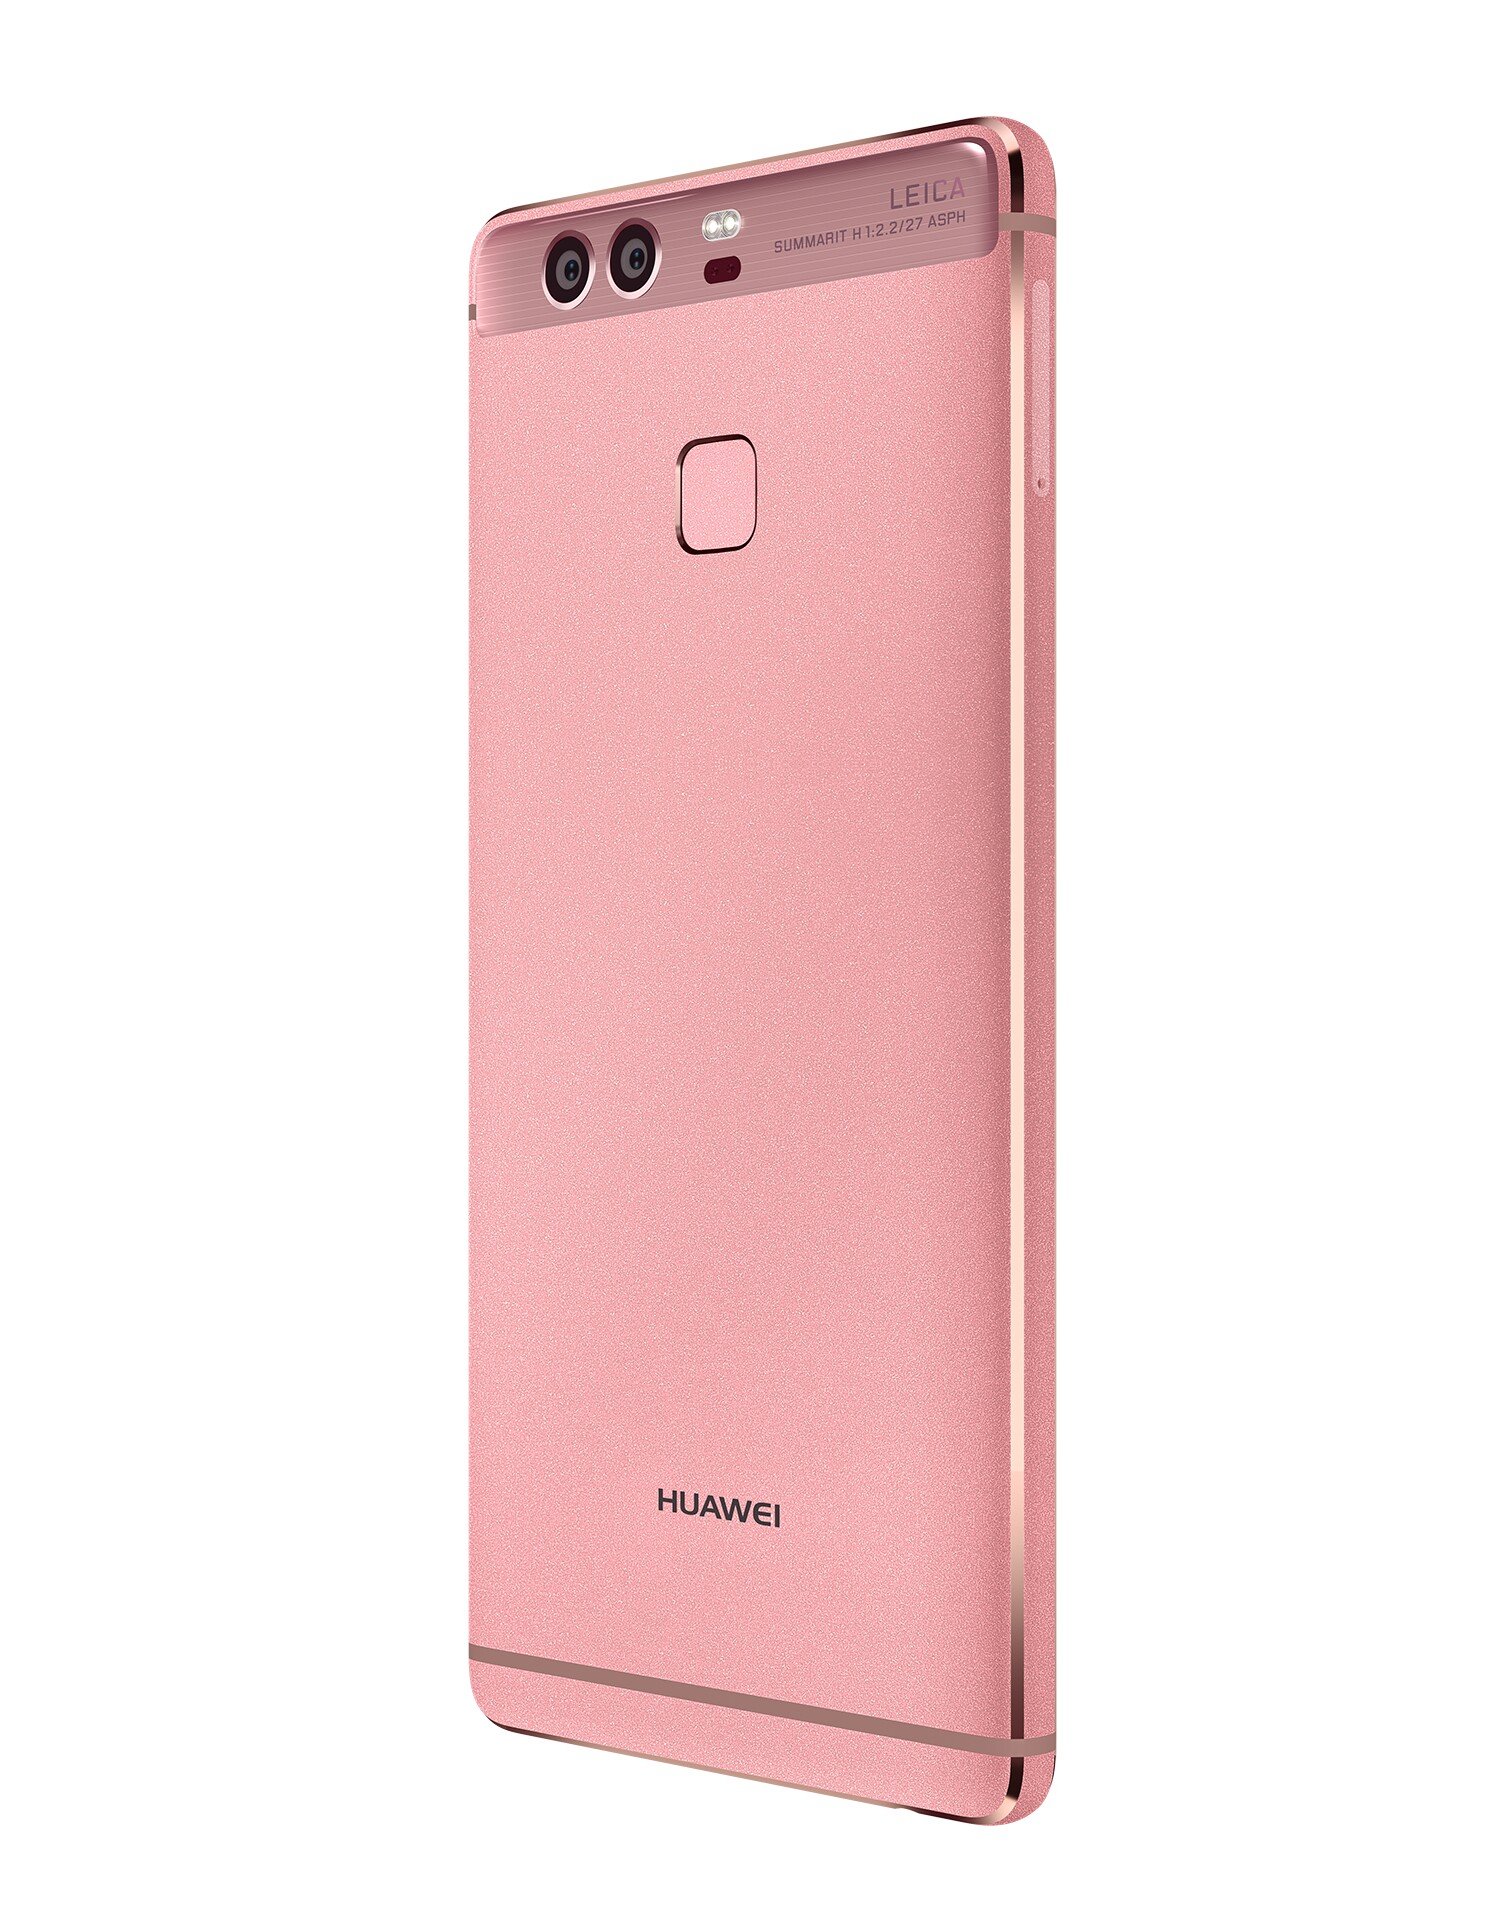 Huawei-P9 01